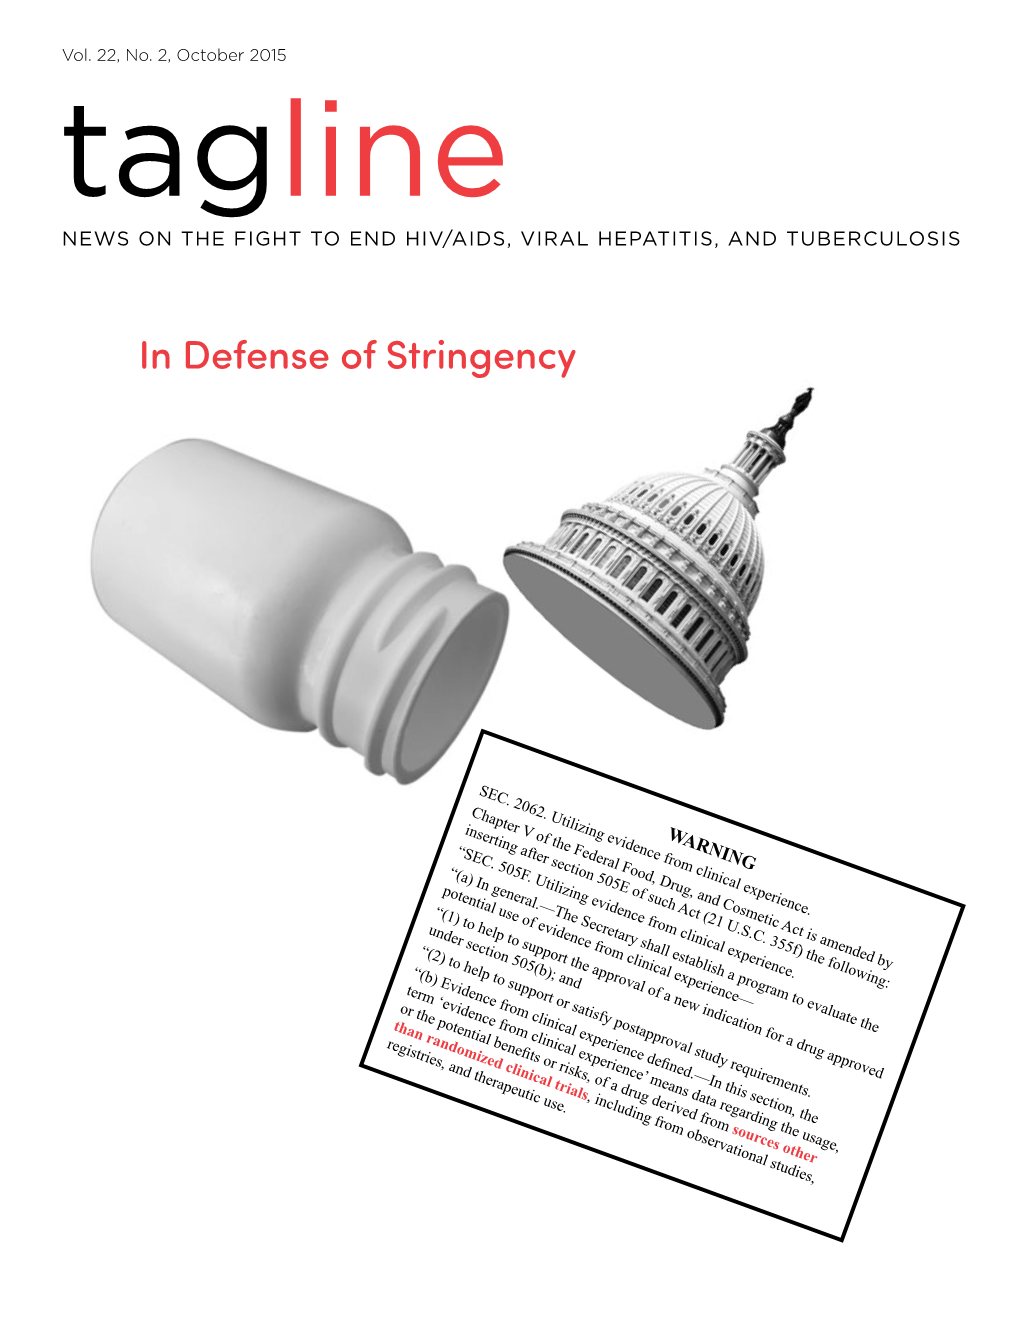 In Defense of Stringency